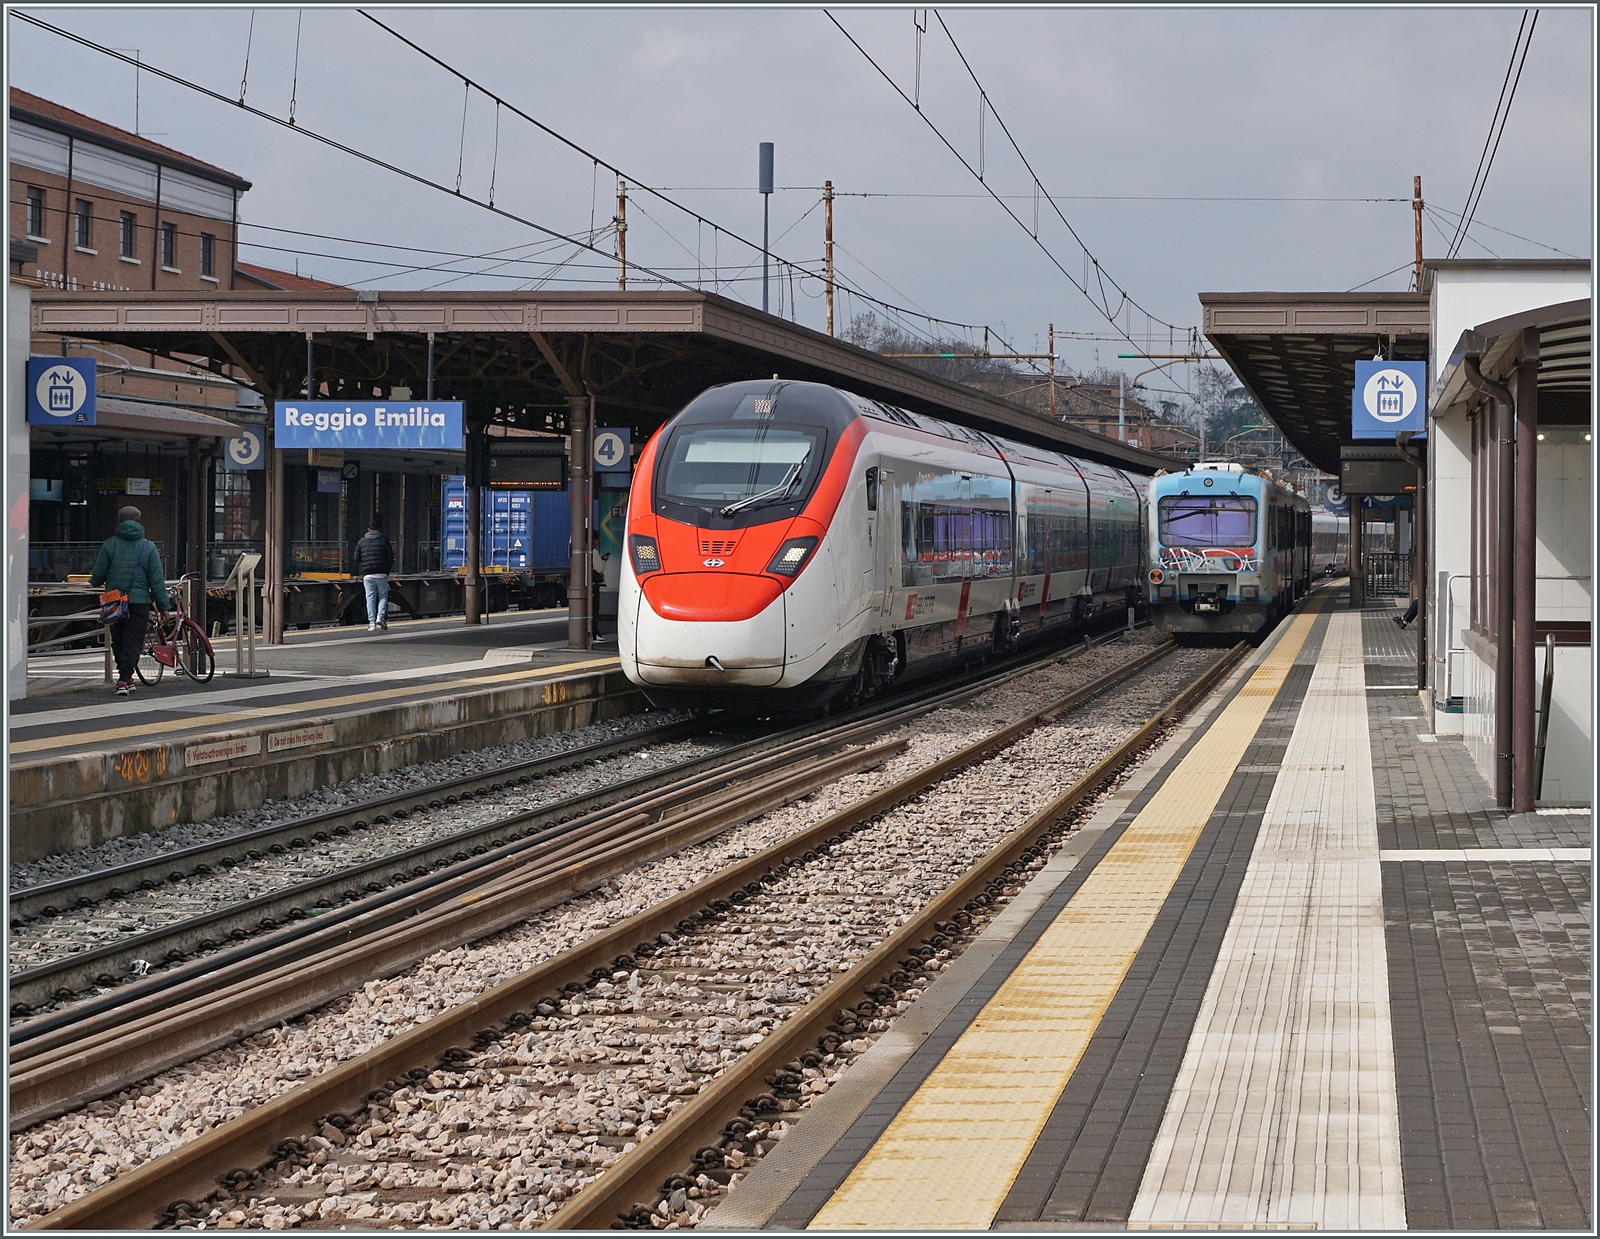 Der SBB  Giruno  RABe 501 018  Appenzell Ausserrhoden  hat als EC 307 von Zürich nach Bologna in Reggio Emilia sein Ziel schon fast erreicht.

14. März 2023